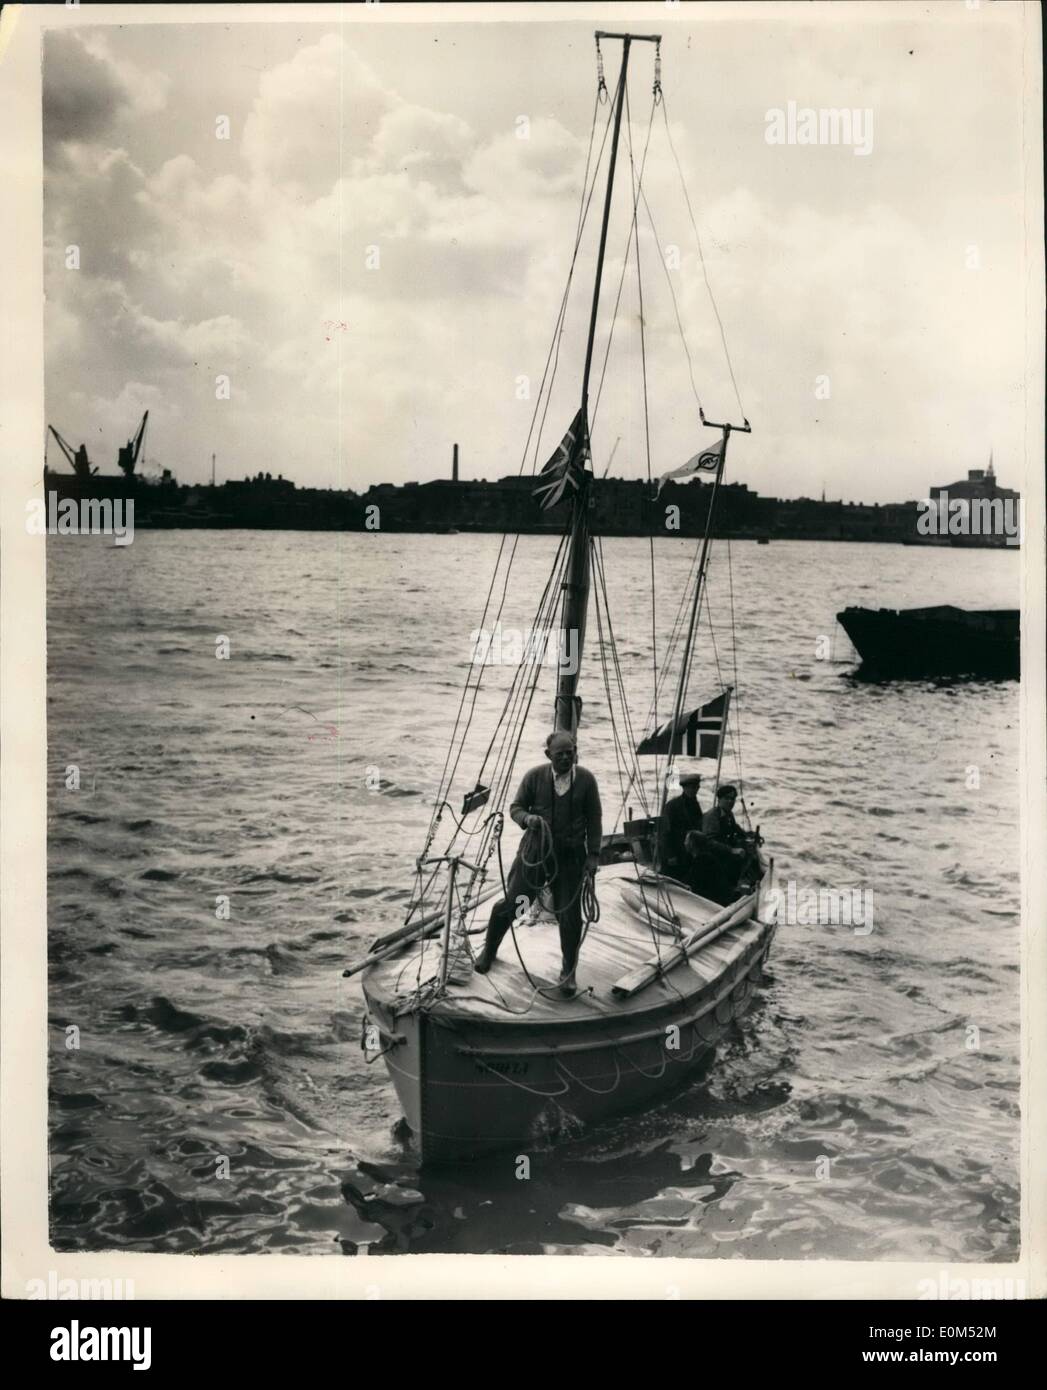 Agosto 08, 1953 - Oslo a Wapping in un alluminio Barca Open. Quattro uomini che hanno attraversato il Mare del Nord come naufraghi naviganti, per eseguire il test di un nuovo tipo di imbarcazione di salvataggio in alluminio, arrivati a Wapping. Il loro viaggio dalla Norvegia, che ha tenuto per dieci giorni, hanno esistito su biscotti, conserve di carne e acqua. Norfly, &frac12;-ton aprire scialuppa di salvataggio, è il primo estera scialuppa di salvataggio deve essere approvato dal Ministero dei trasporti per i pescherecci britannici. Sarà in mostra presso la Marine e Engineering mostra a Londra. Capitano della Barca era di 47-anno-vecchio Lieut Foto Stock